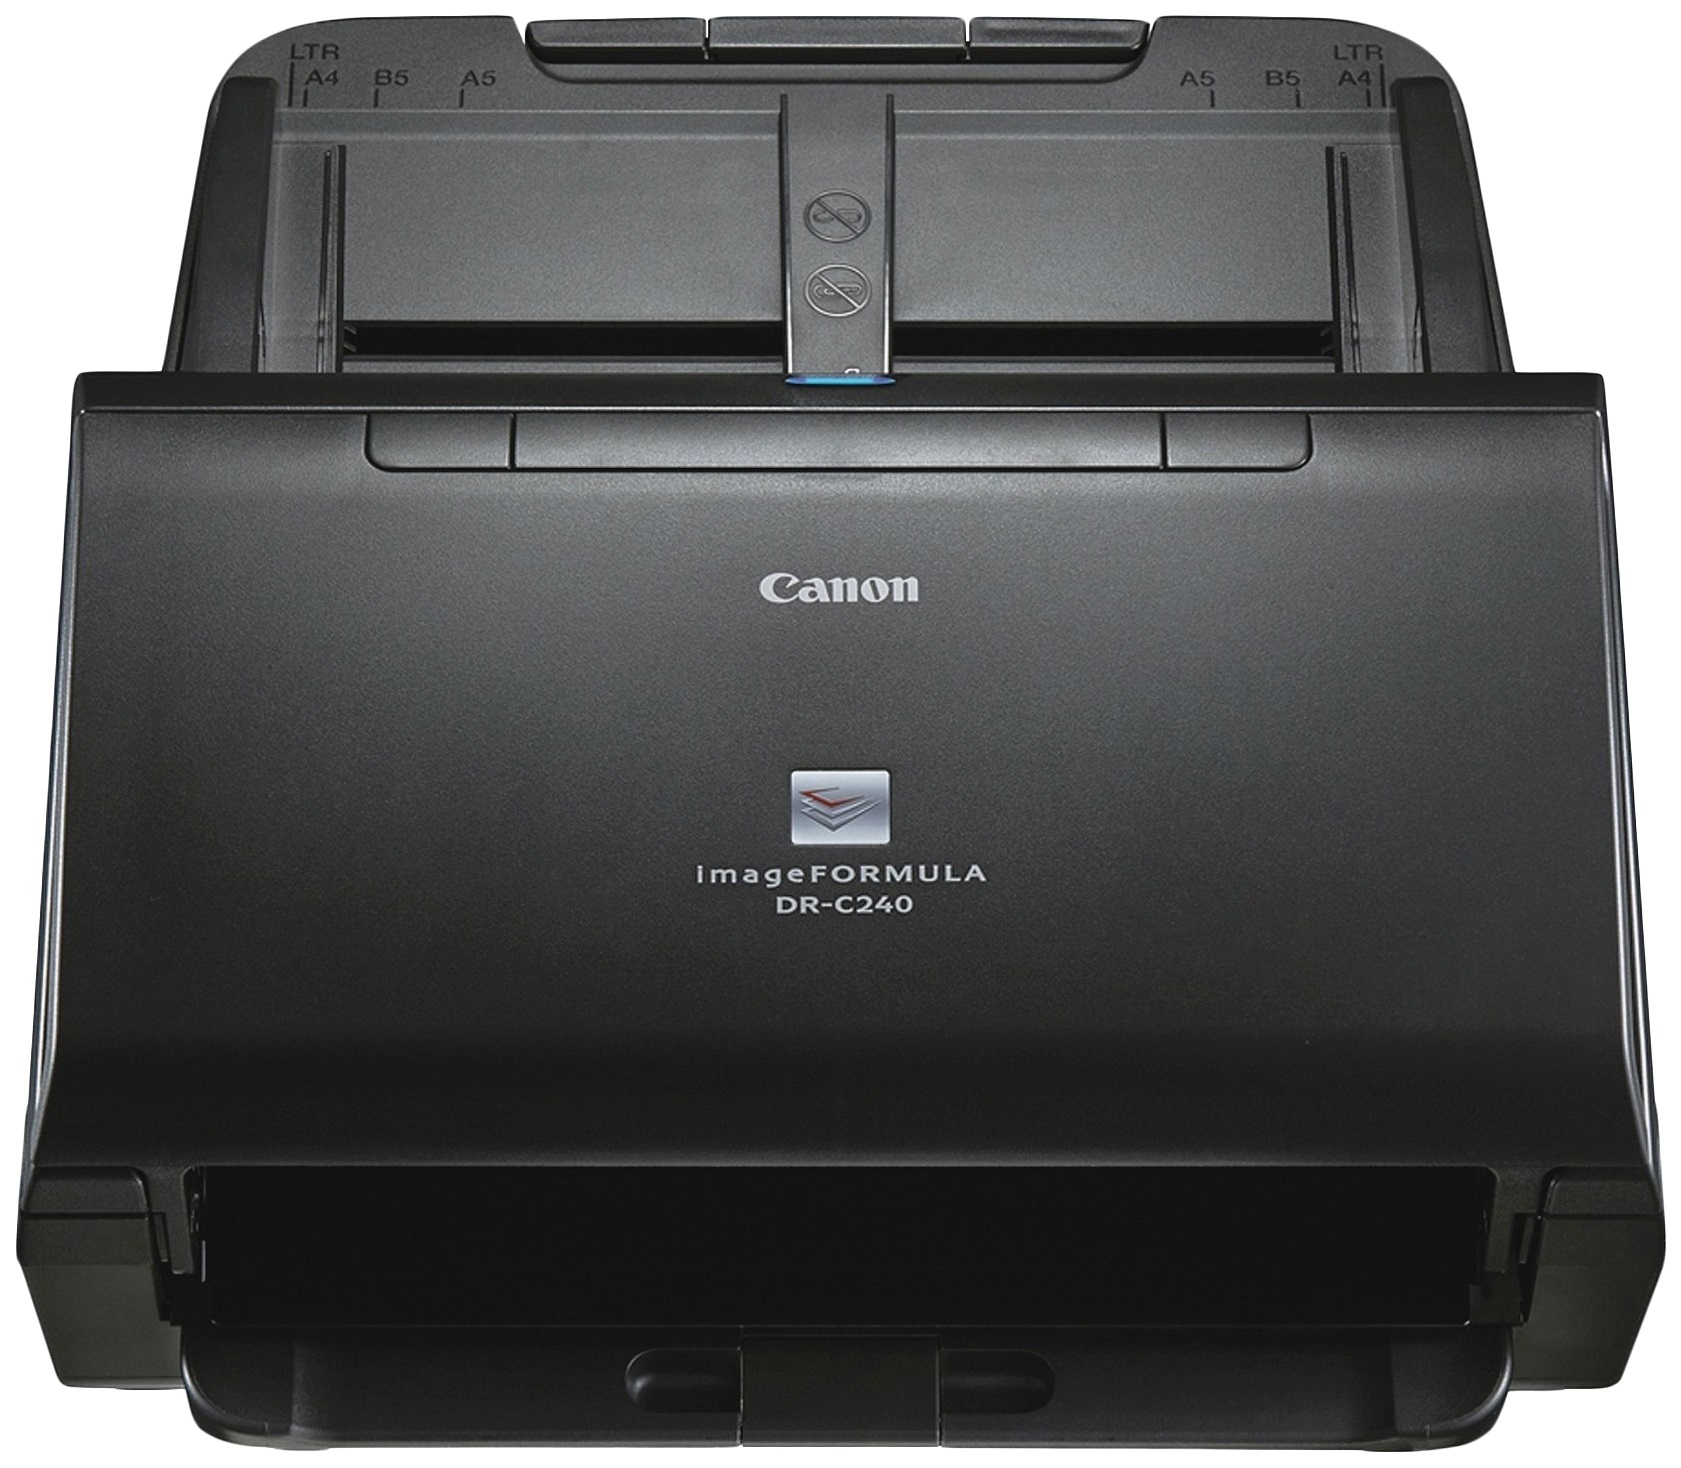 Сканер Canon ImageFormula DR-C240 Black